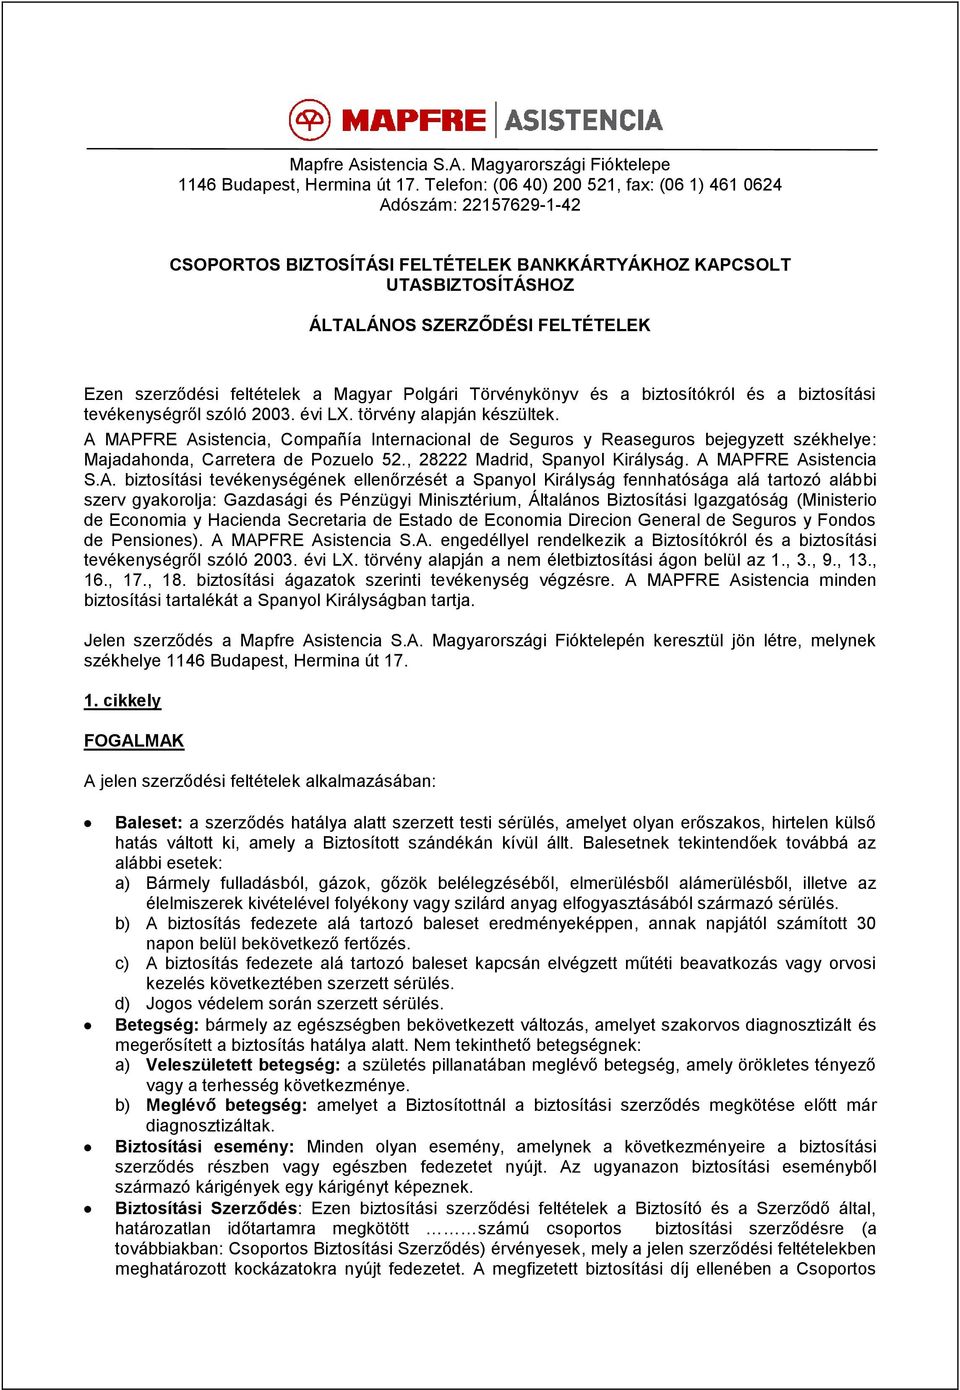 feltételek a Magyar Polgári Törvénykönyv és a biztosítókról és a biztosítási tevékenységről szóló 2003. évi LX. törvény alapján készültek.